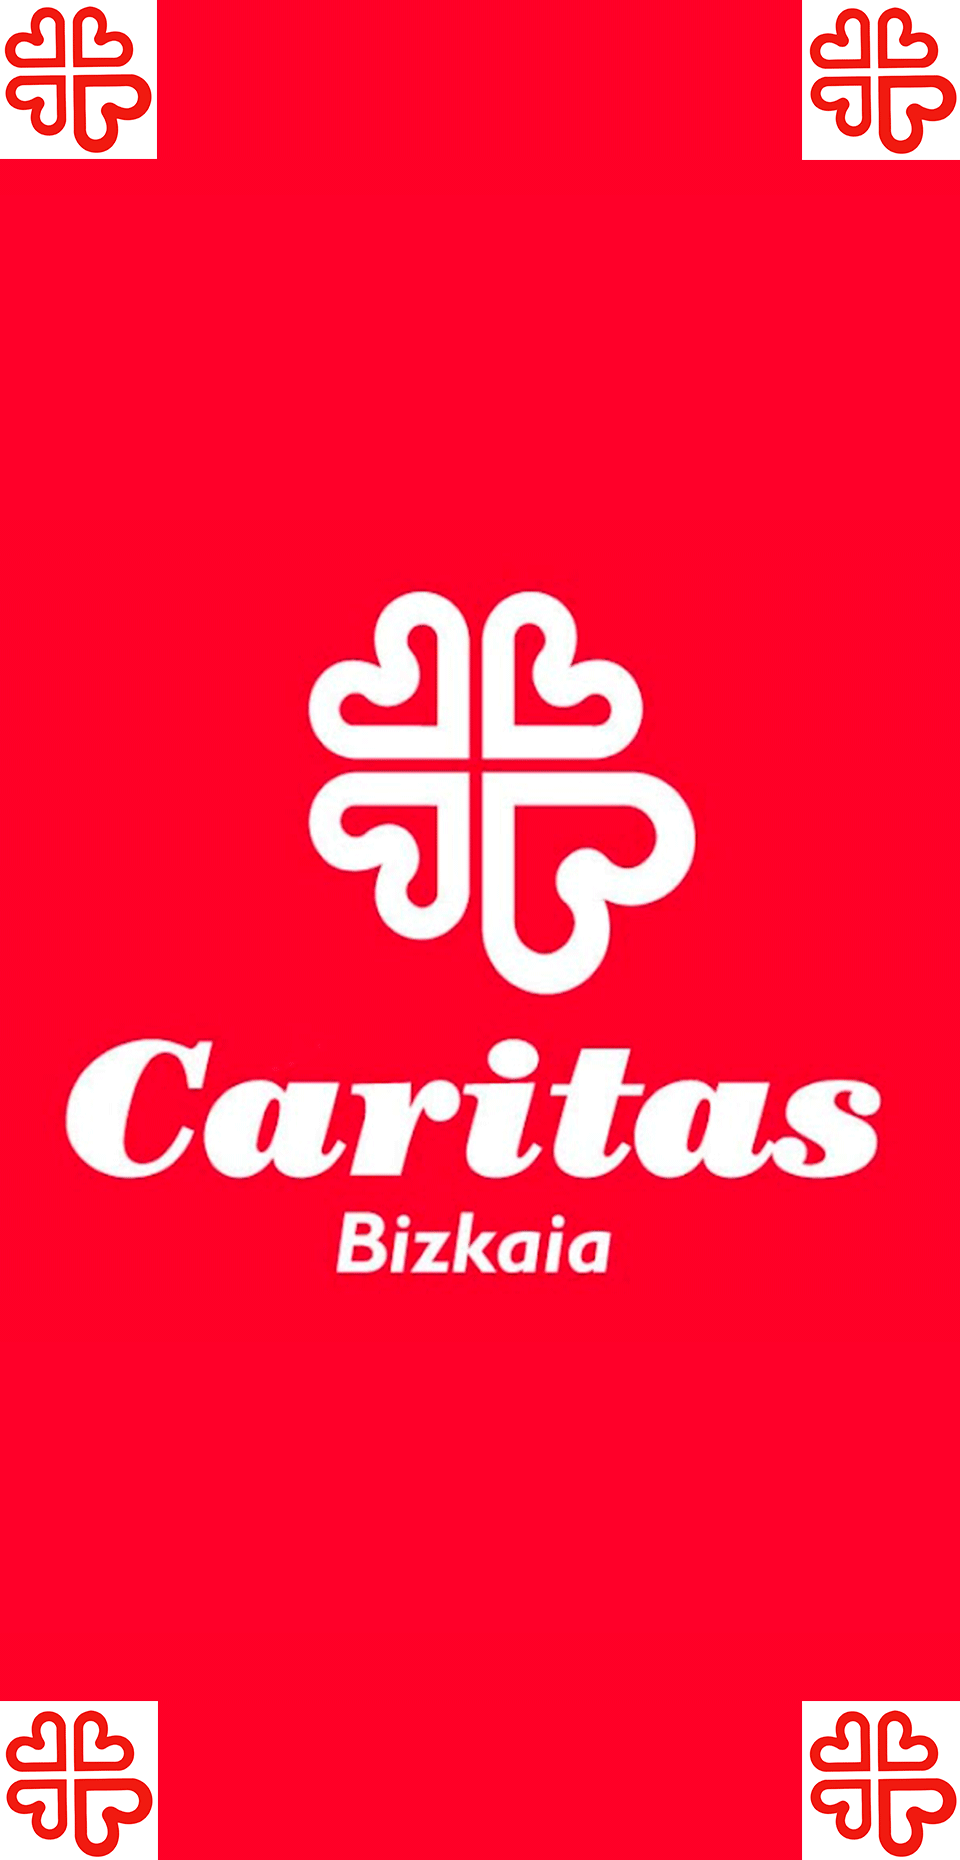 Banner de Cáritas Bizkaia en Bilbao